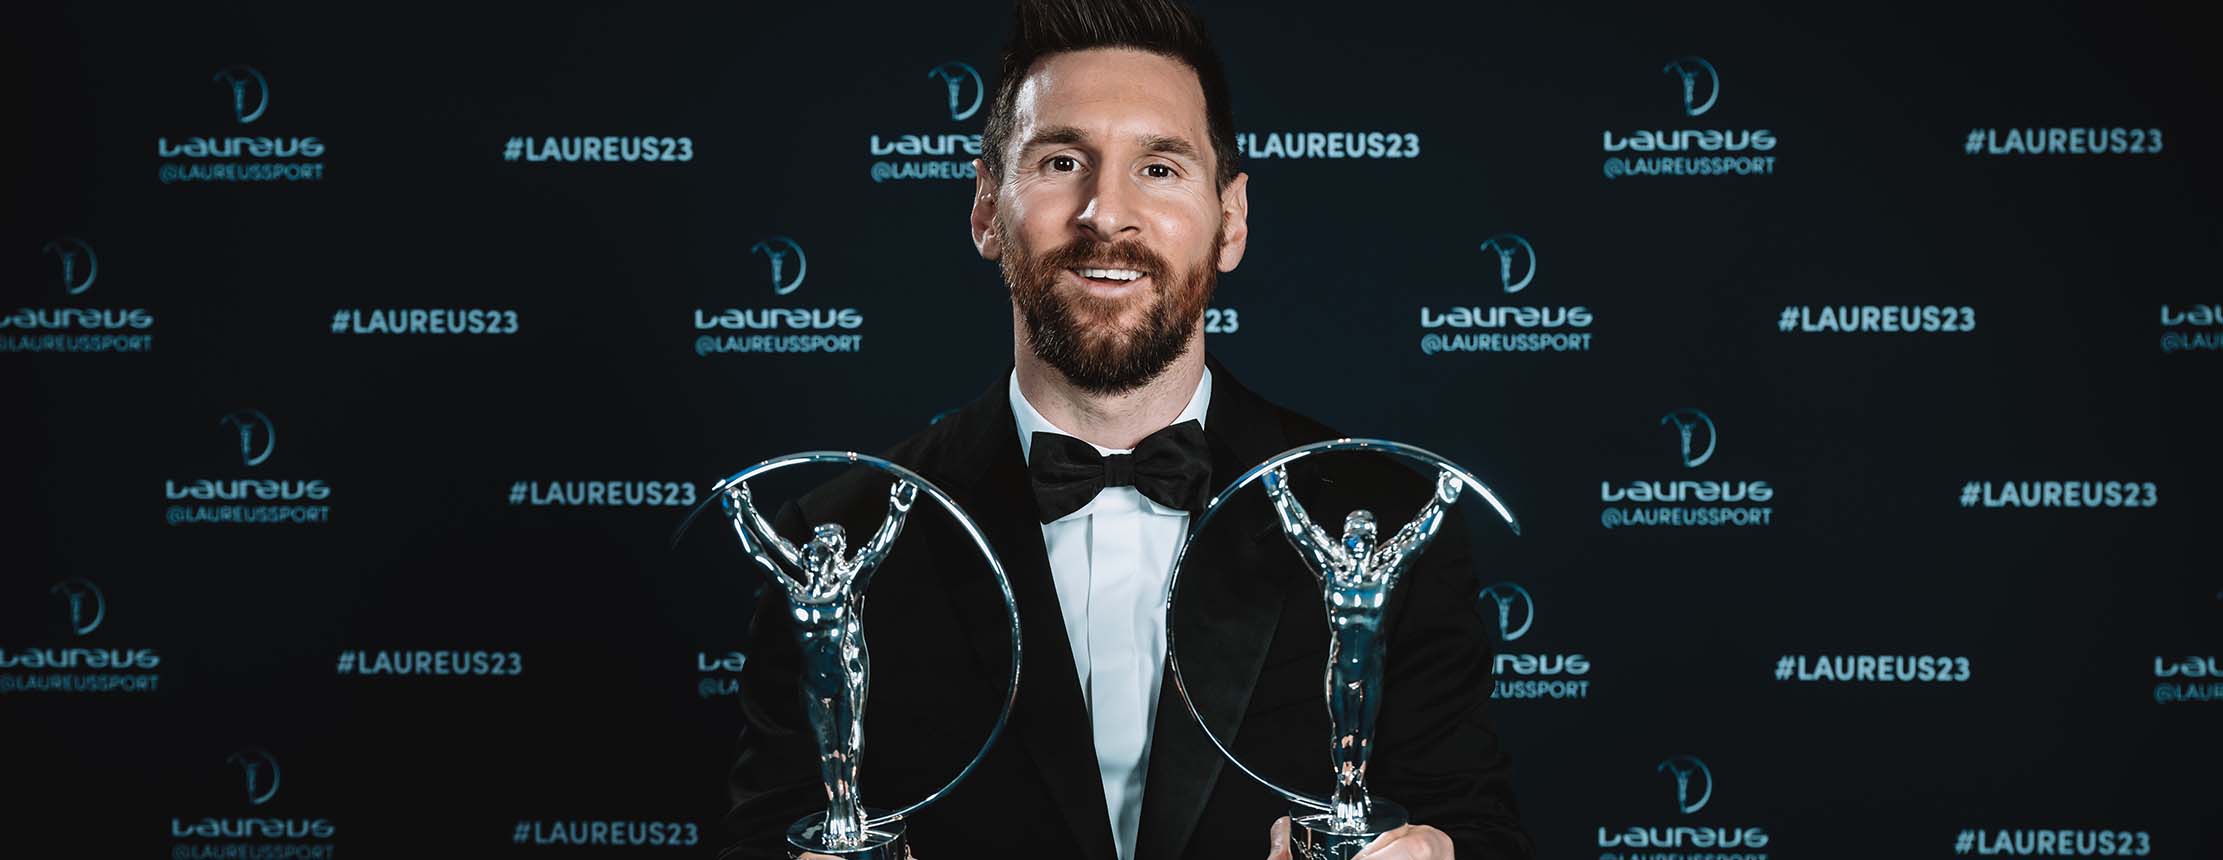 Lionel messi laureus awards